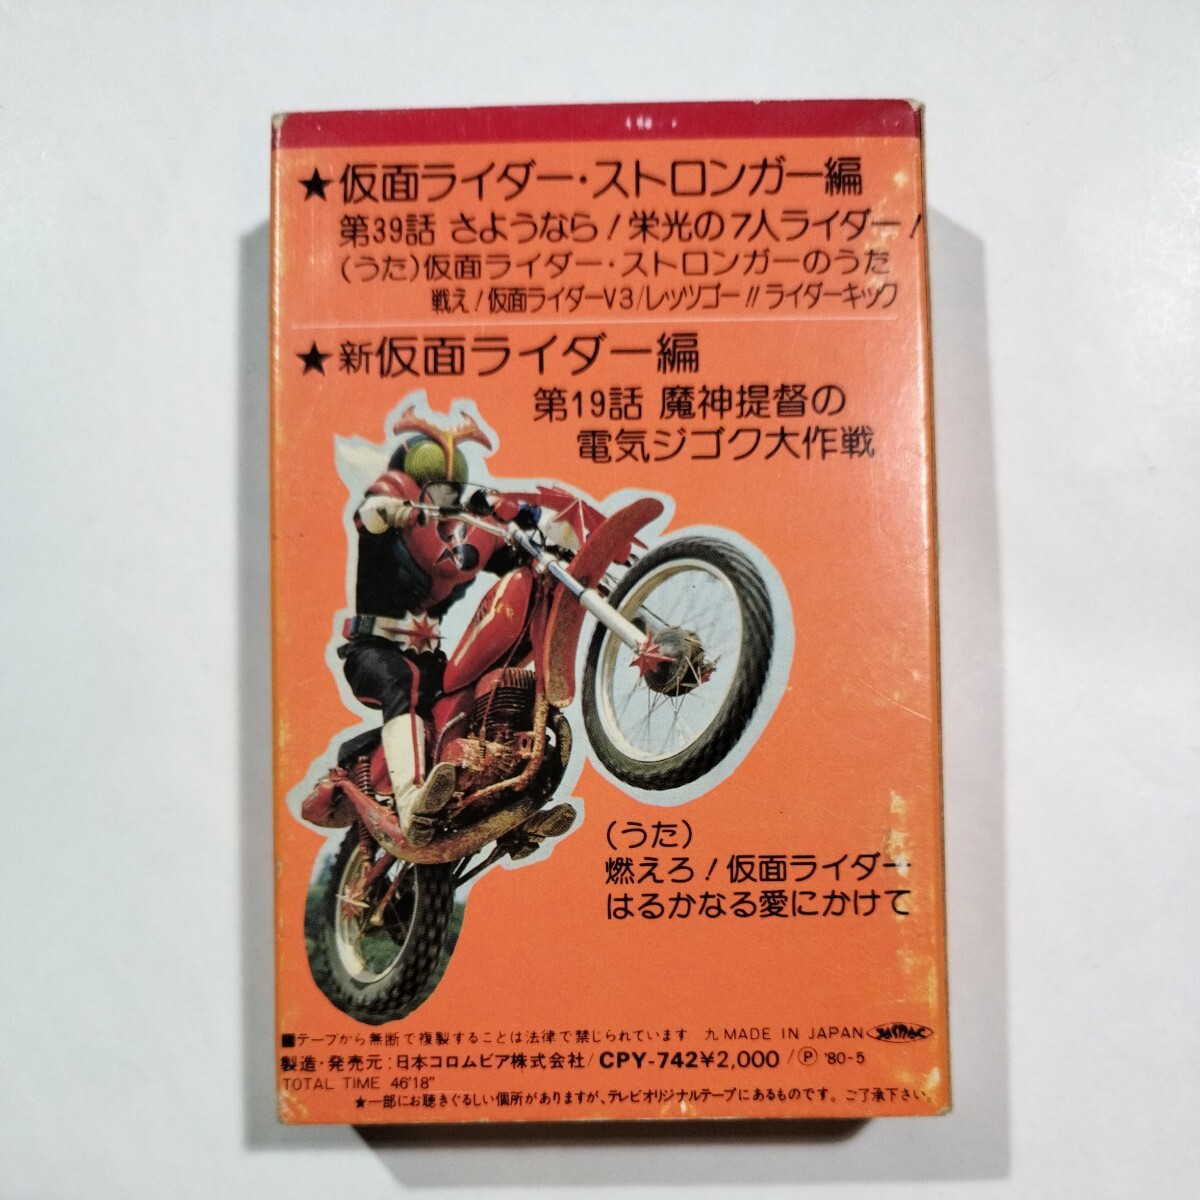  Kamen Rider * драма серии ④ Stronger новый Kamen Rider кассетная лента 